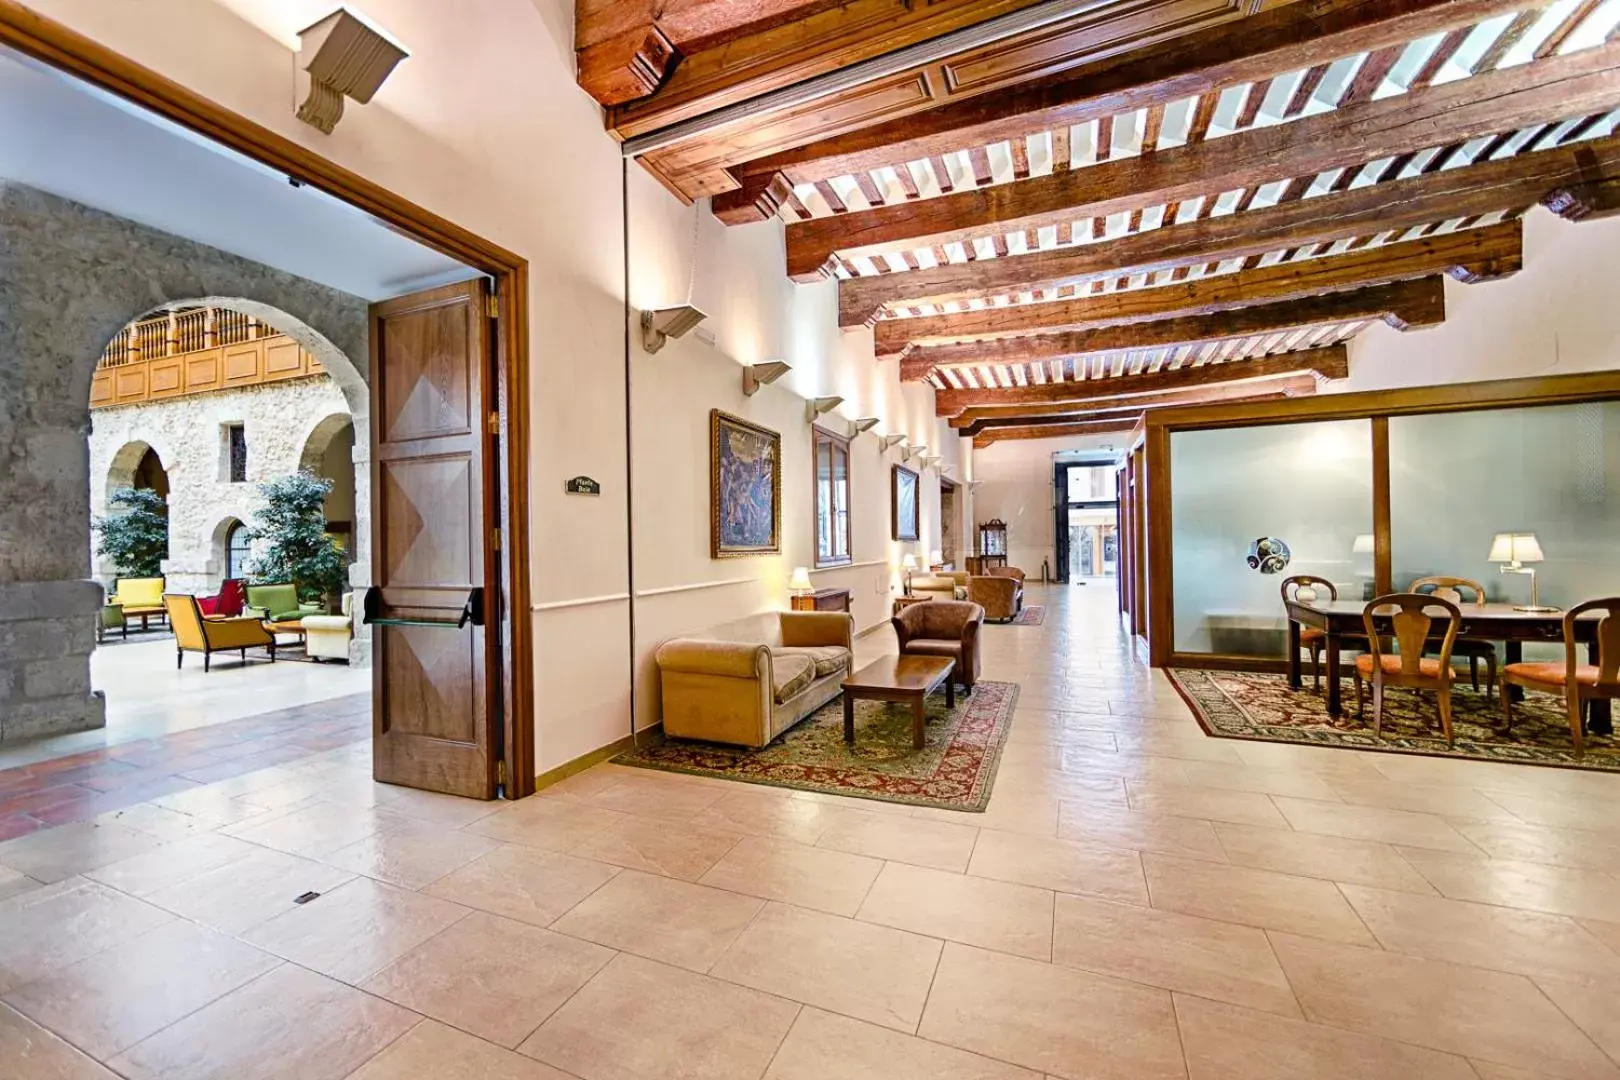 Lobby or reception, Lobby/Reception in AZZ Peñafiel Las Claras Hotel & Spa